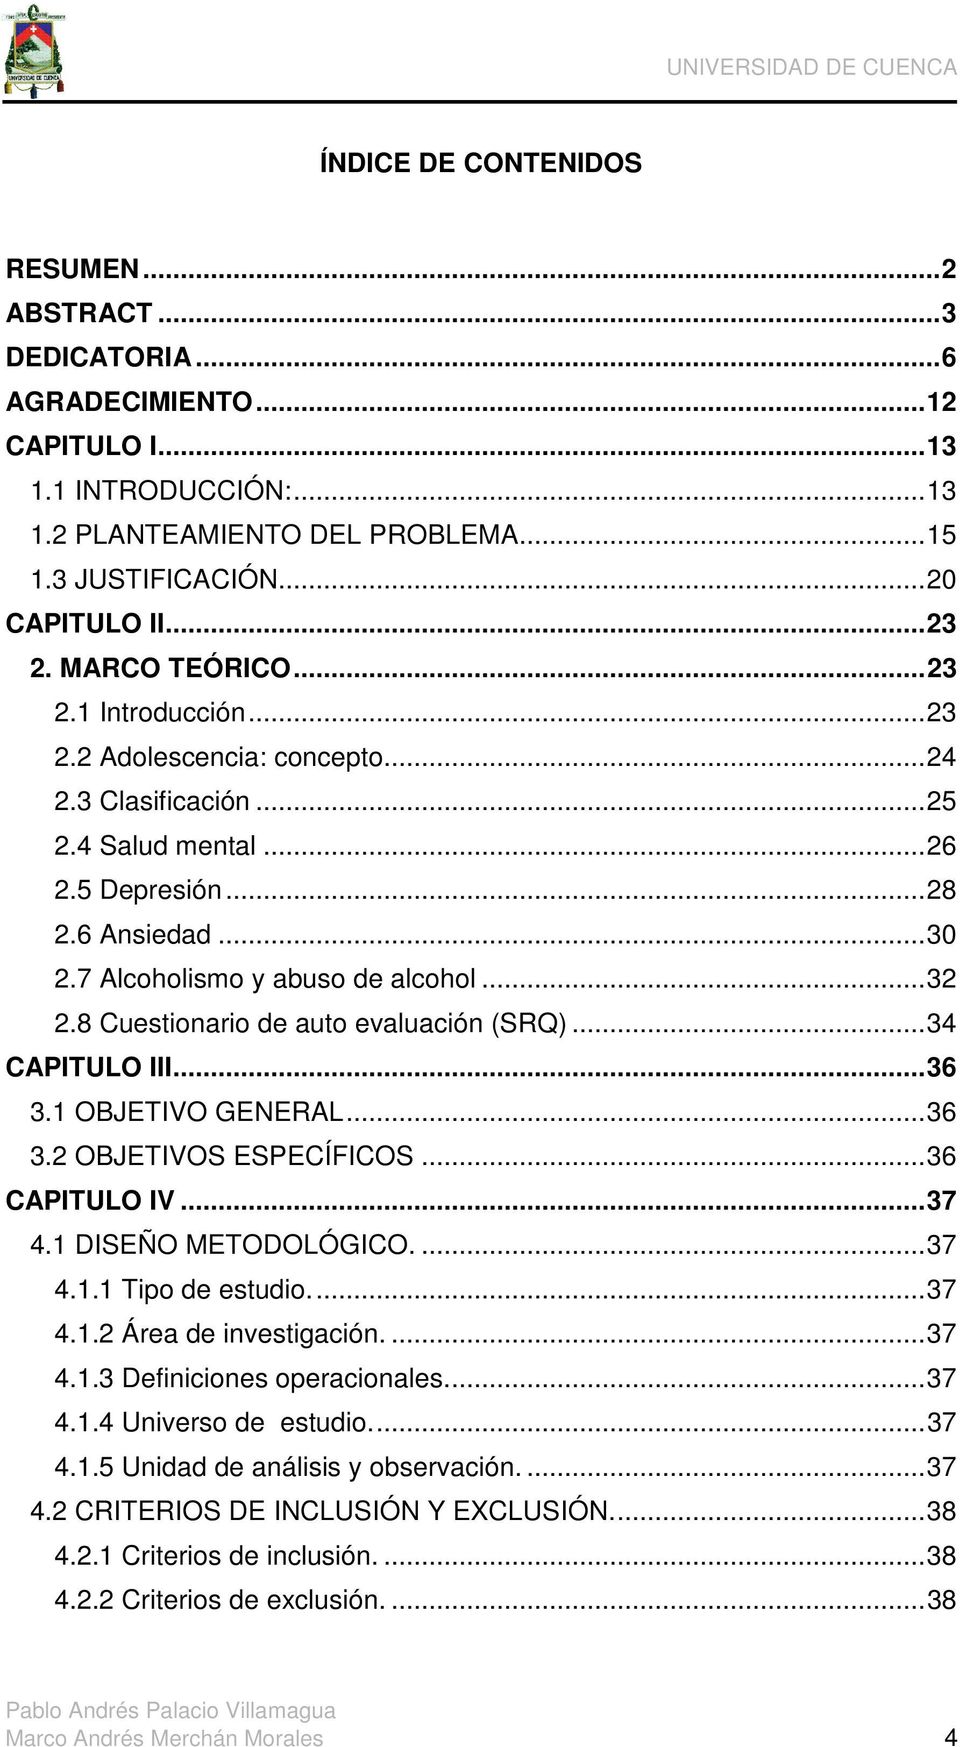 7 Alcoholismo y abuso de alcohol... 32 2.8 Cuestionario de auto evaluación (SRQ)... 34 CAPITULO III... 36 3.1 OBJETIVO GENERAL... 36 3.2 OBJETIVOS ESPECÍFICOS... 36 CAPITULO IV... 37 4.